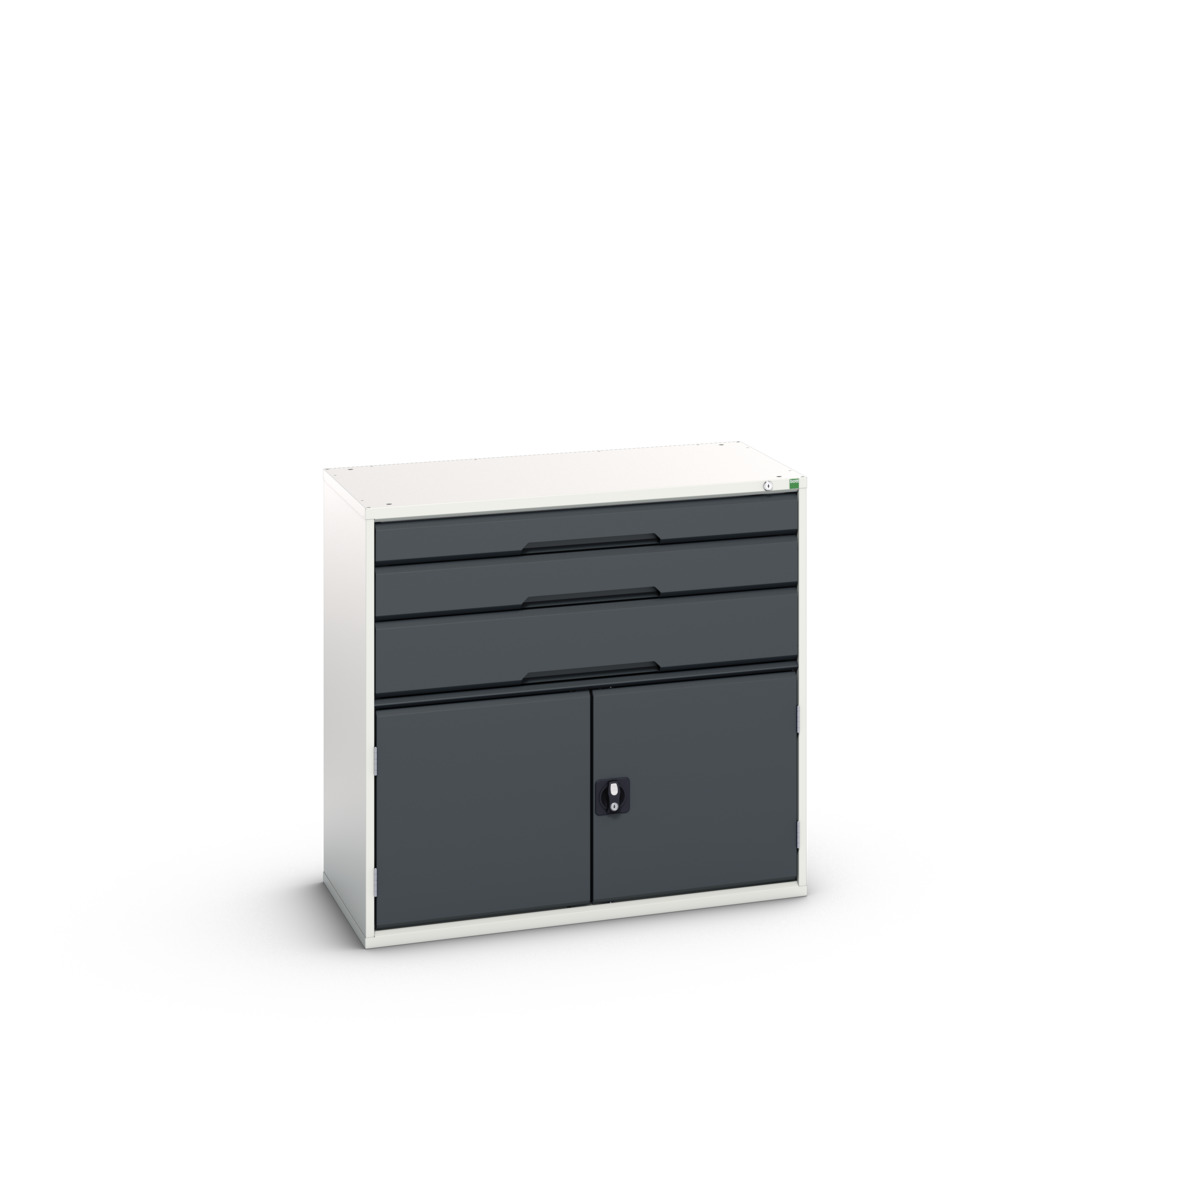 16925261.19 - verso drawer-door cabinet